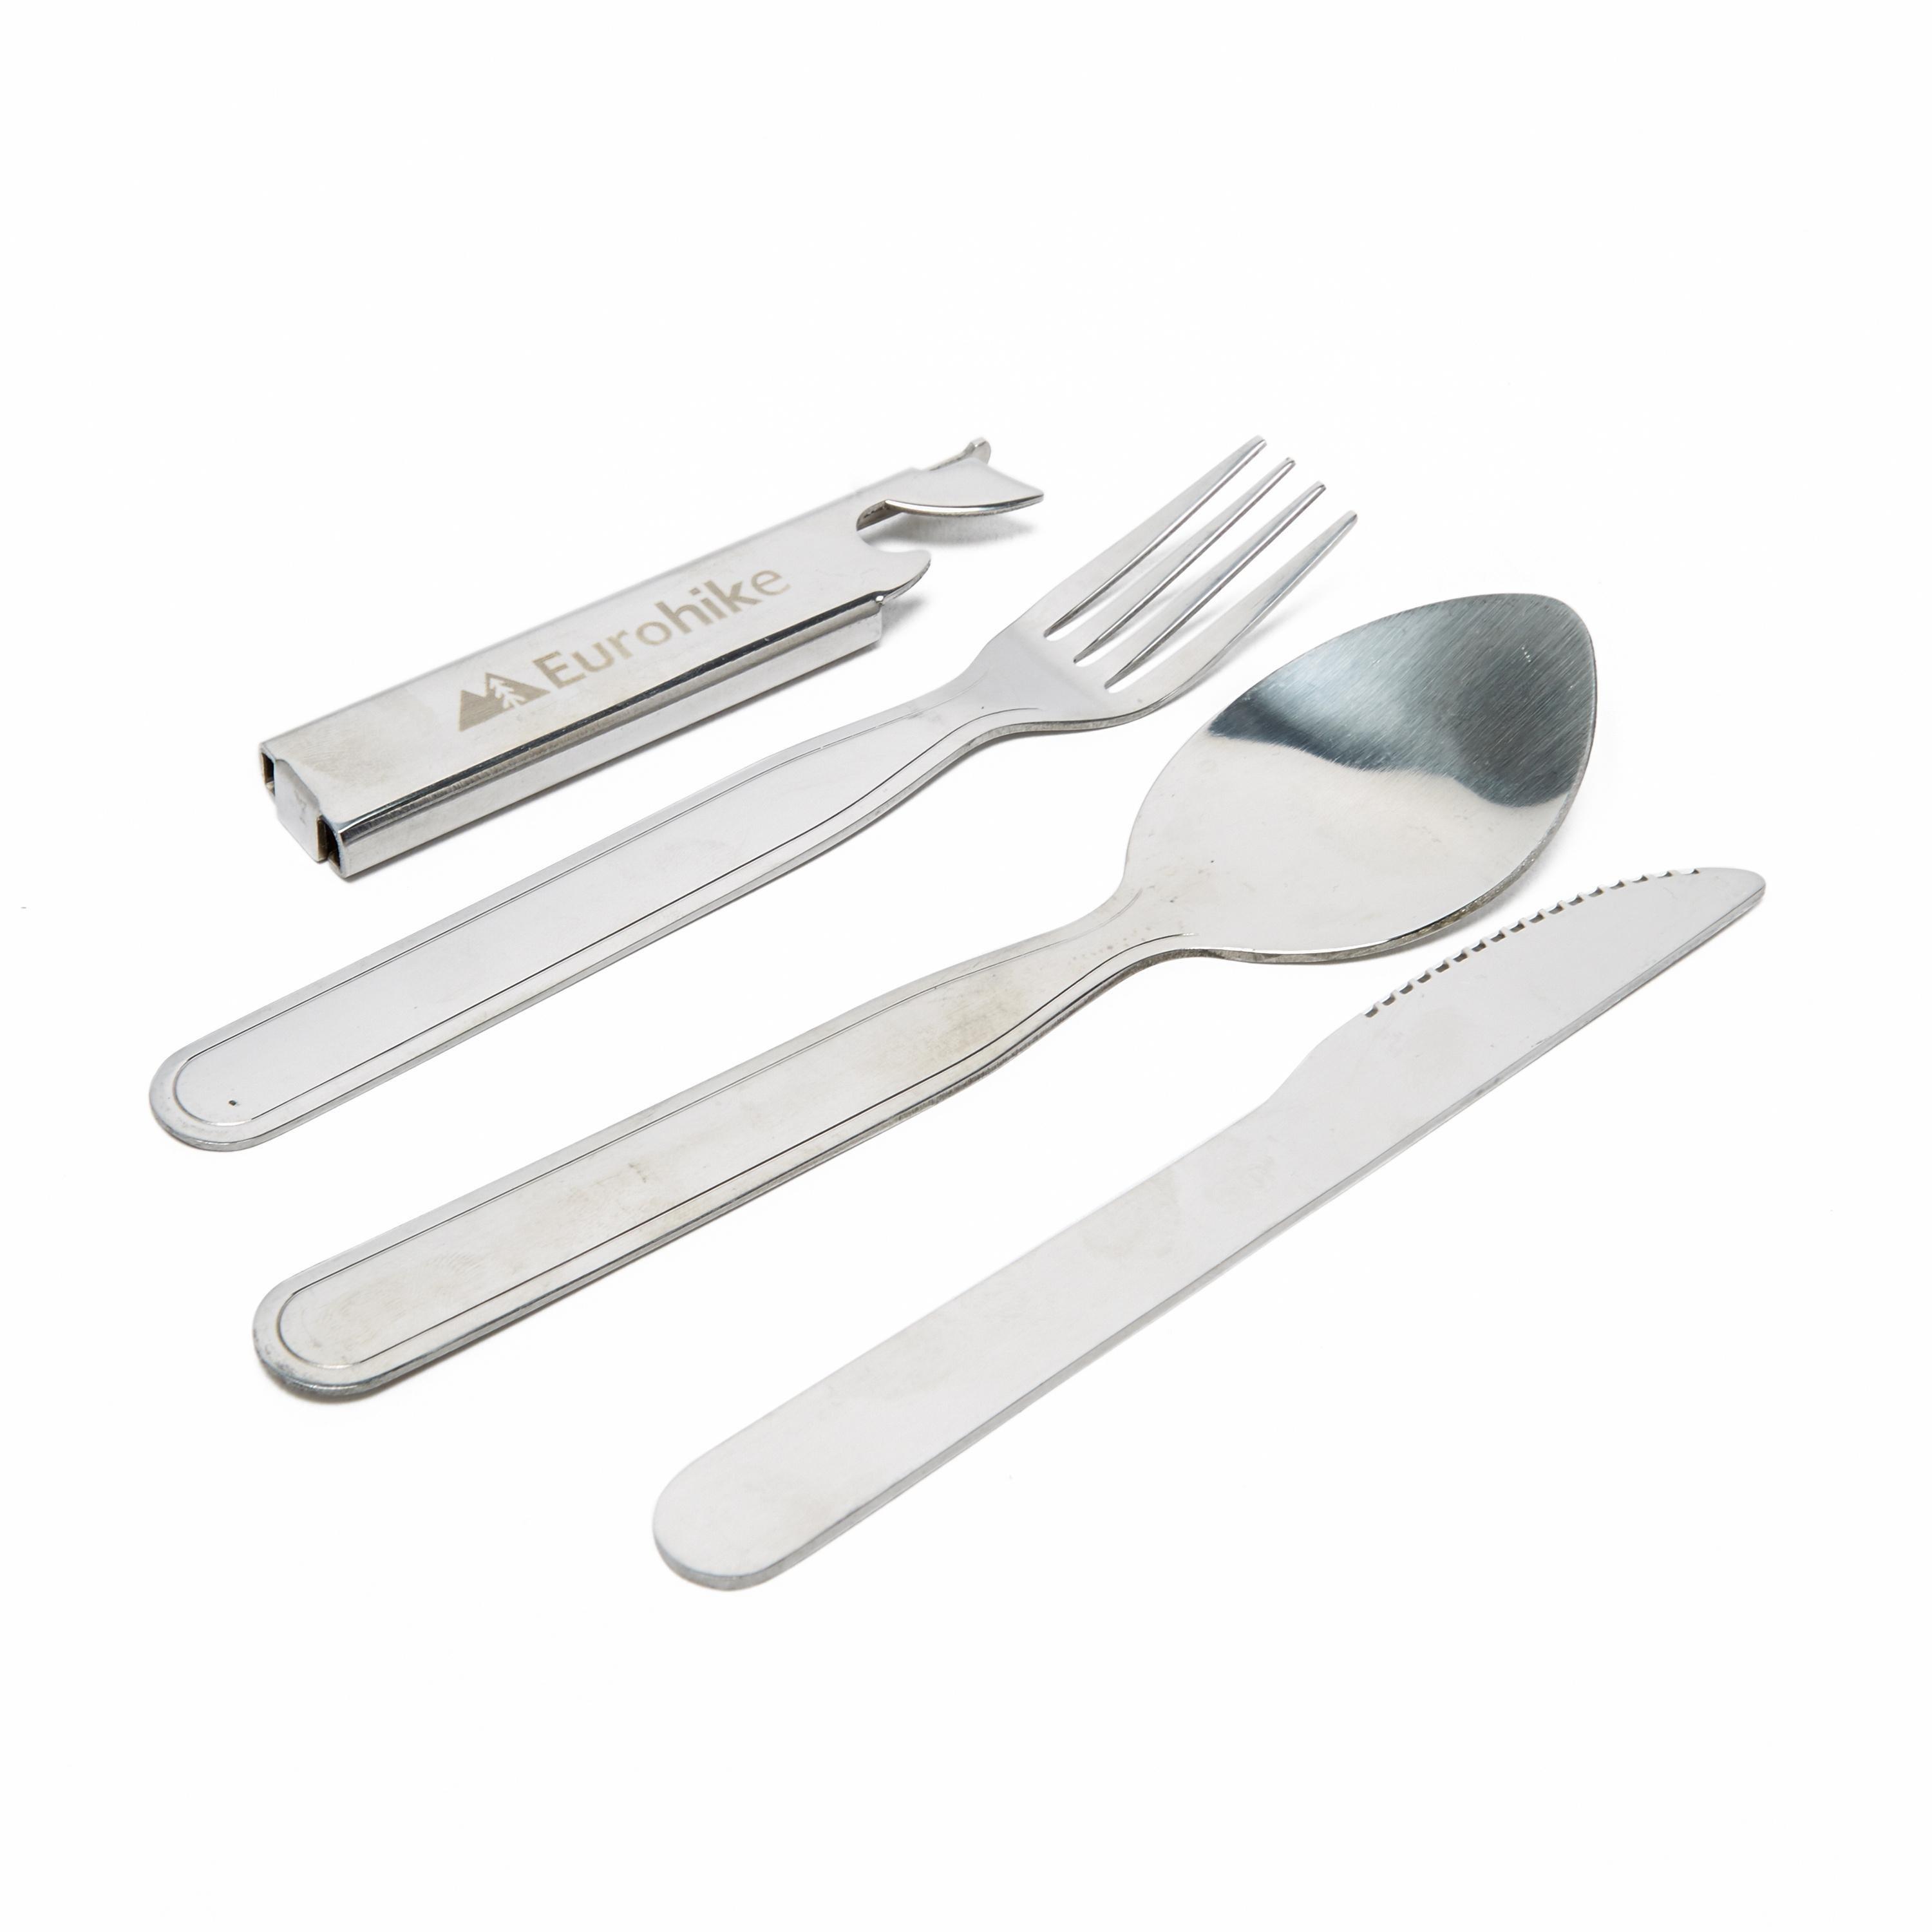 4 Piece Cutlery Set - Silver, Silver